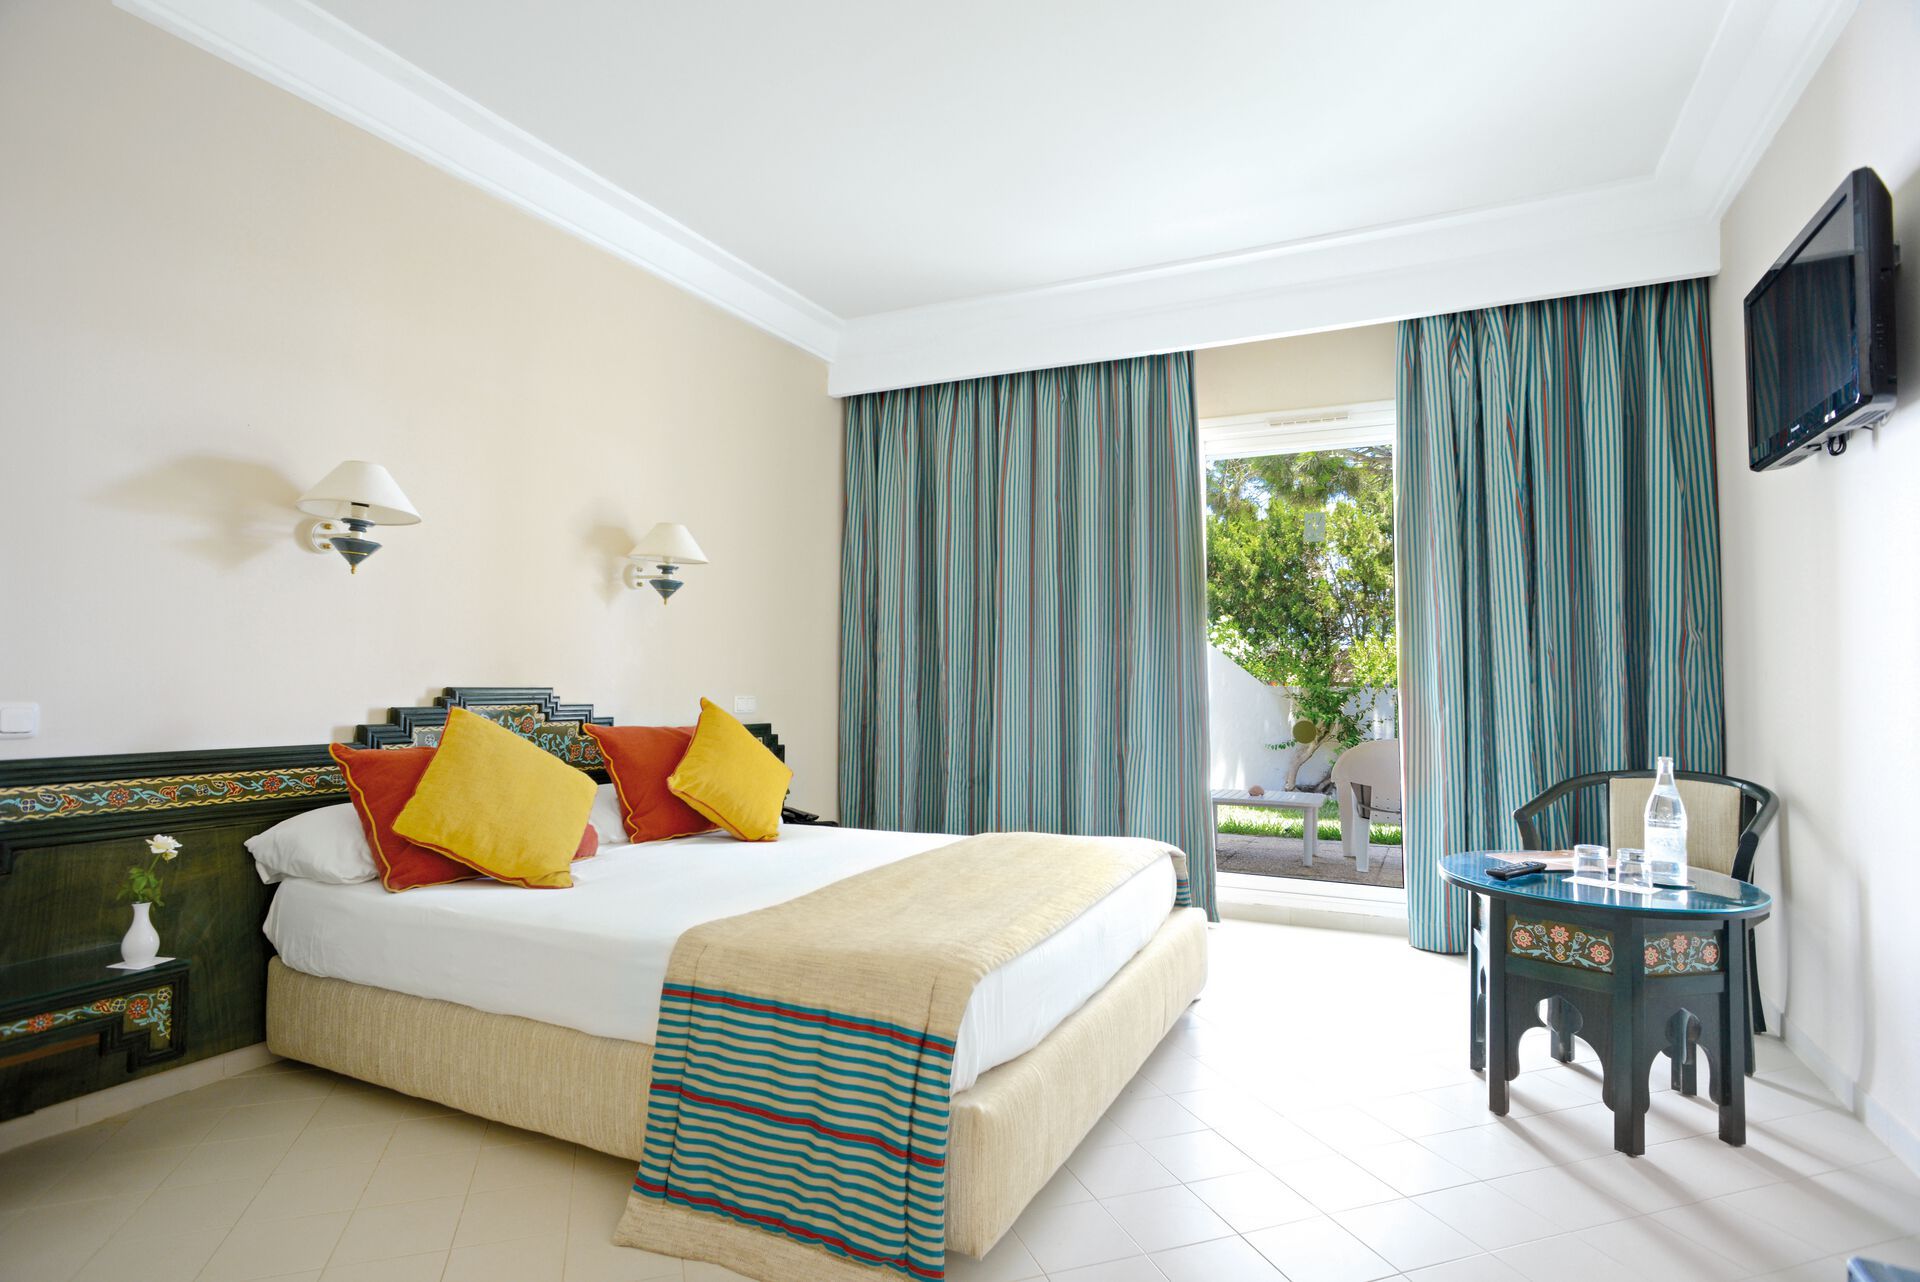 Tunisie - Monastir - Hôtel One Resort El Mansour 4*